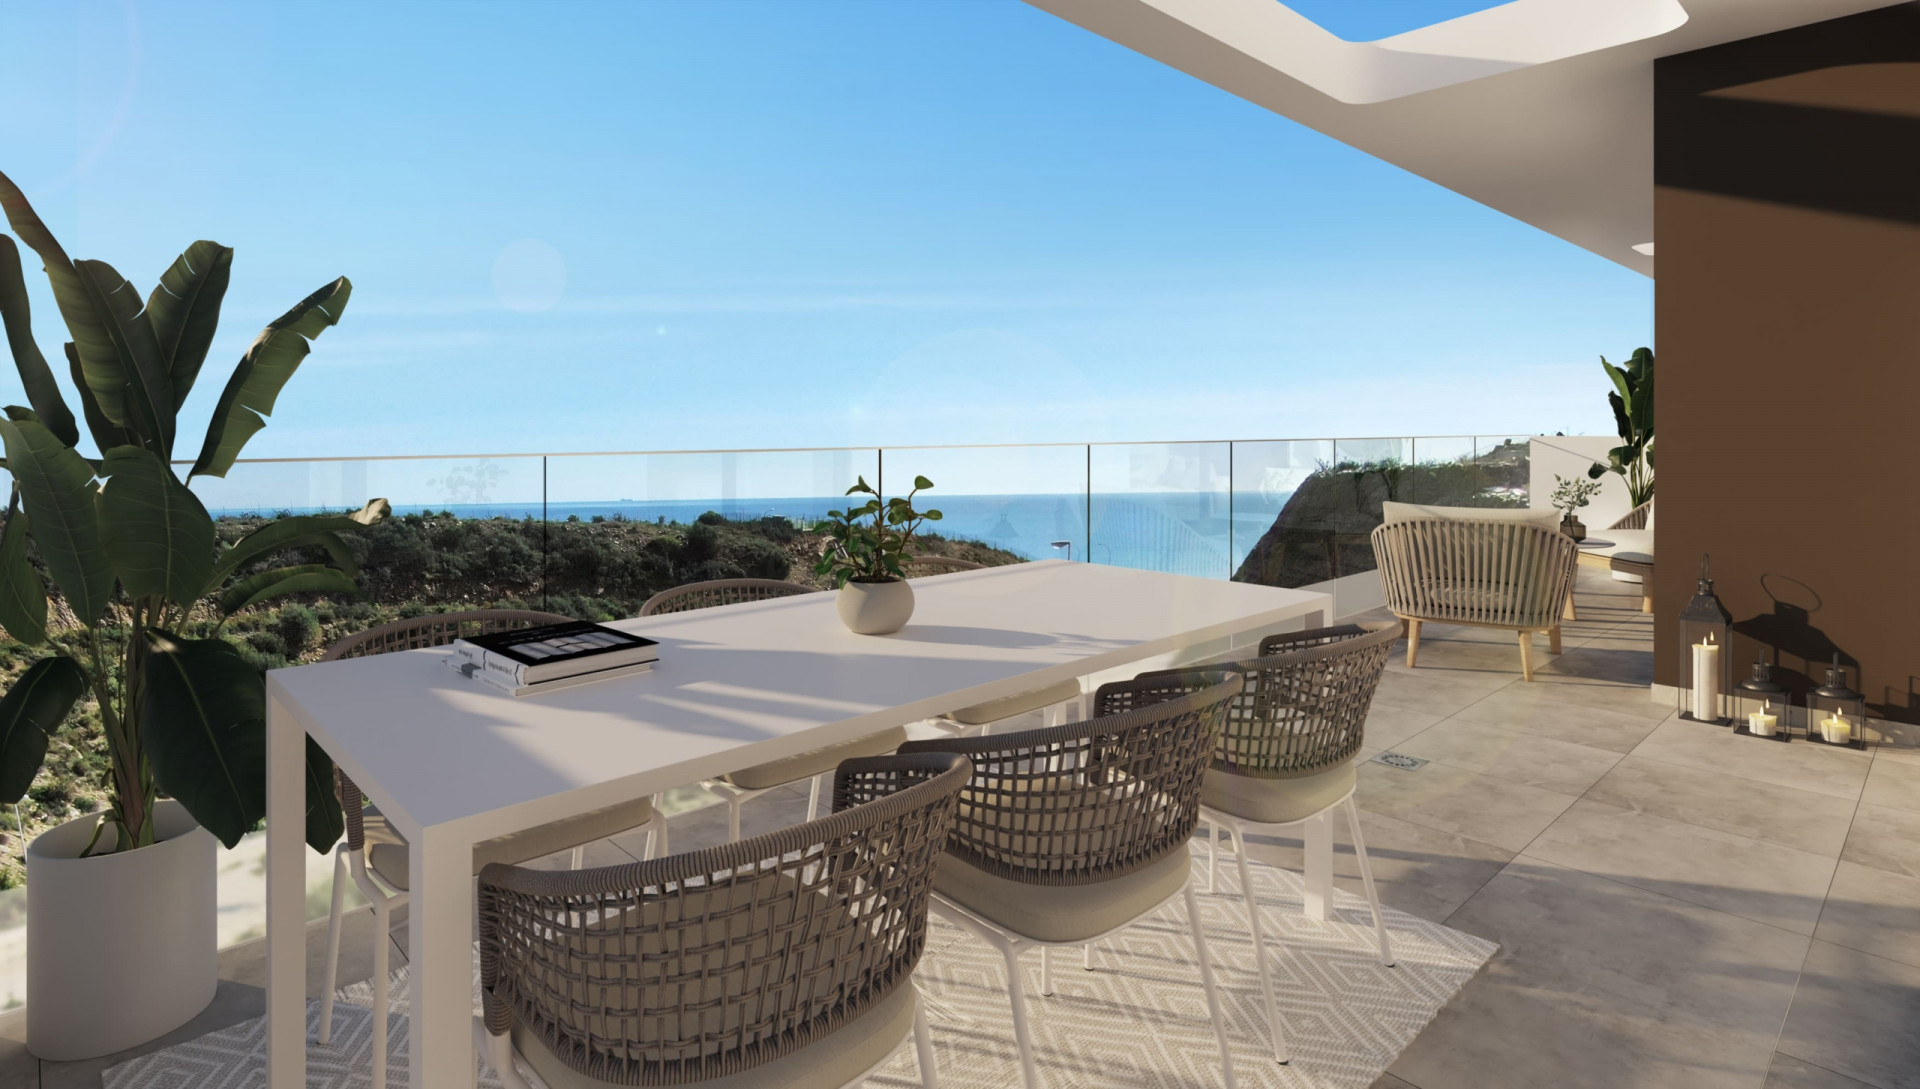 Idilia Terram: Exclusive development of 22 homes with incredible sea views in Rincón de la Victoria. | Image 3